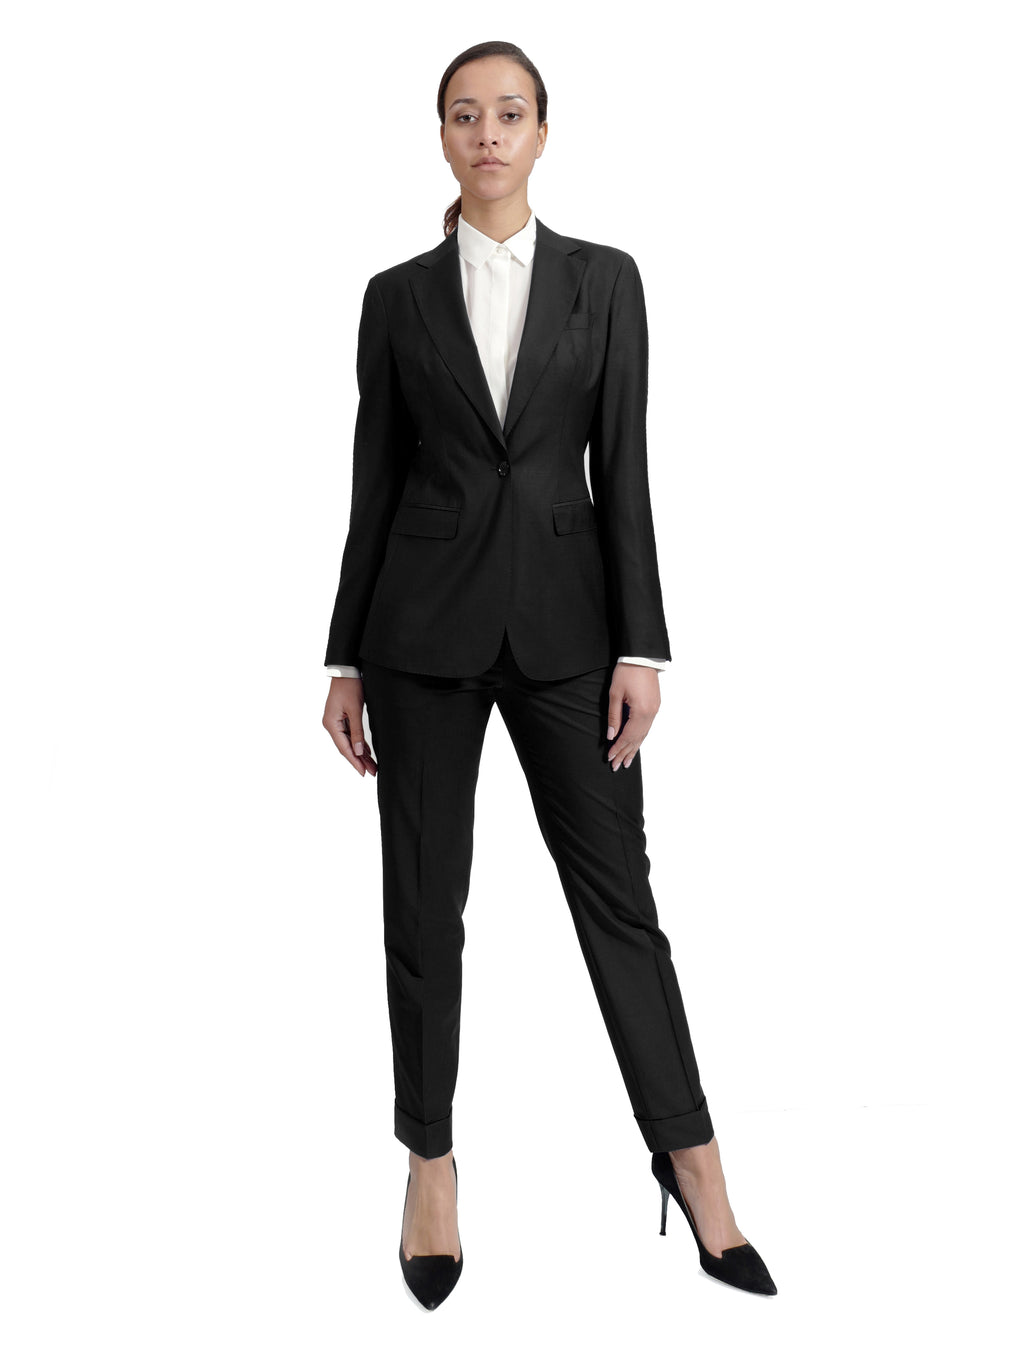 Olivia Black Suit